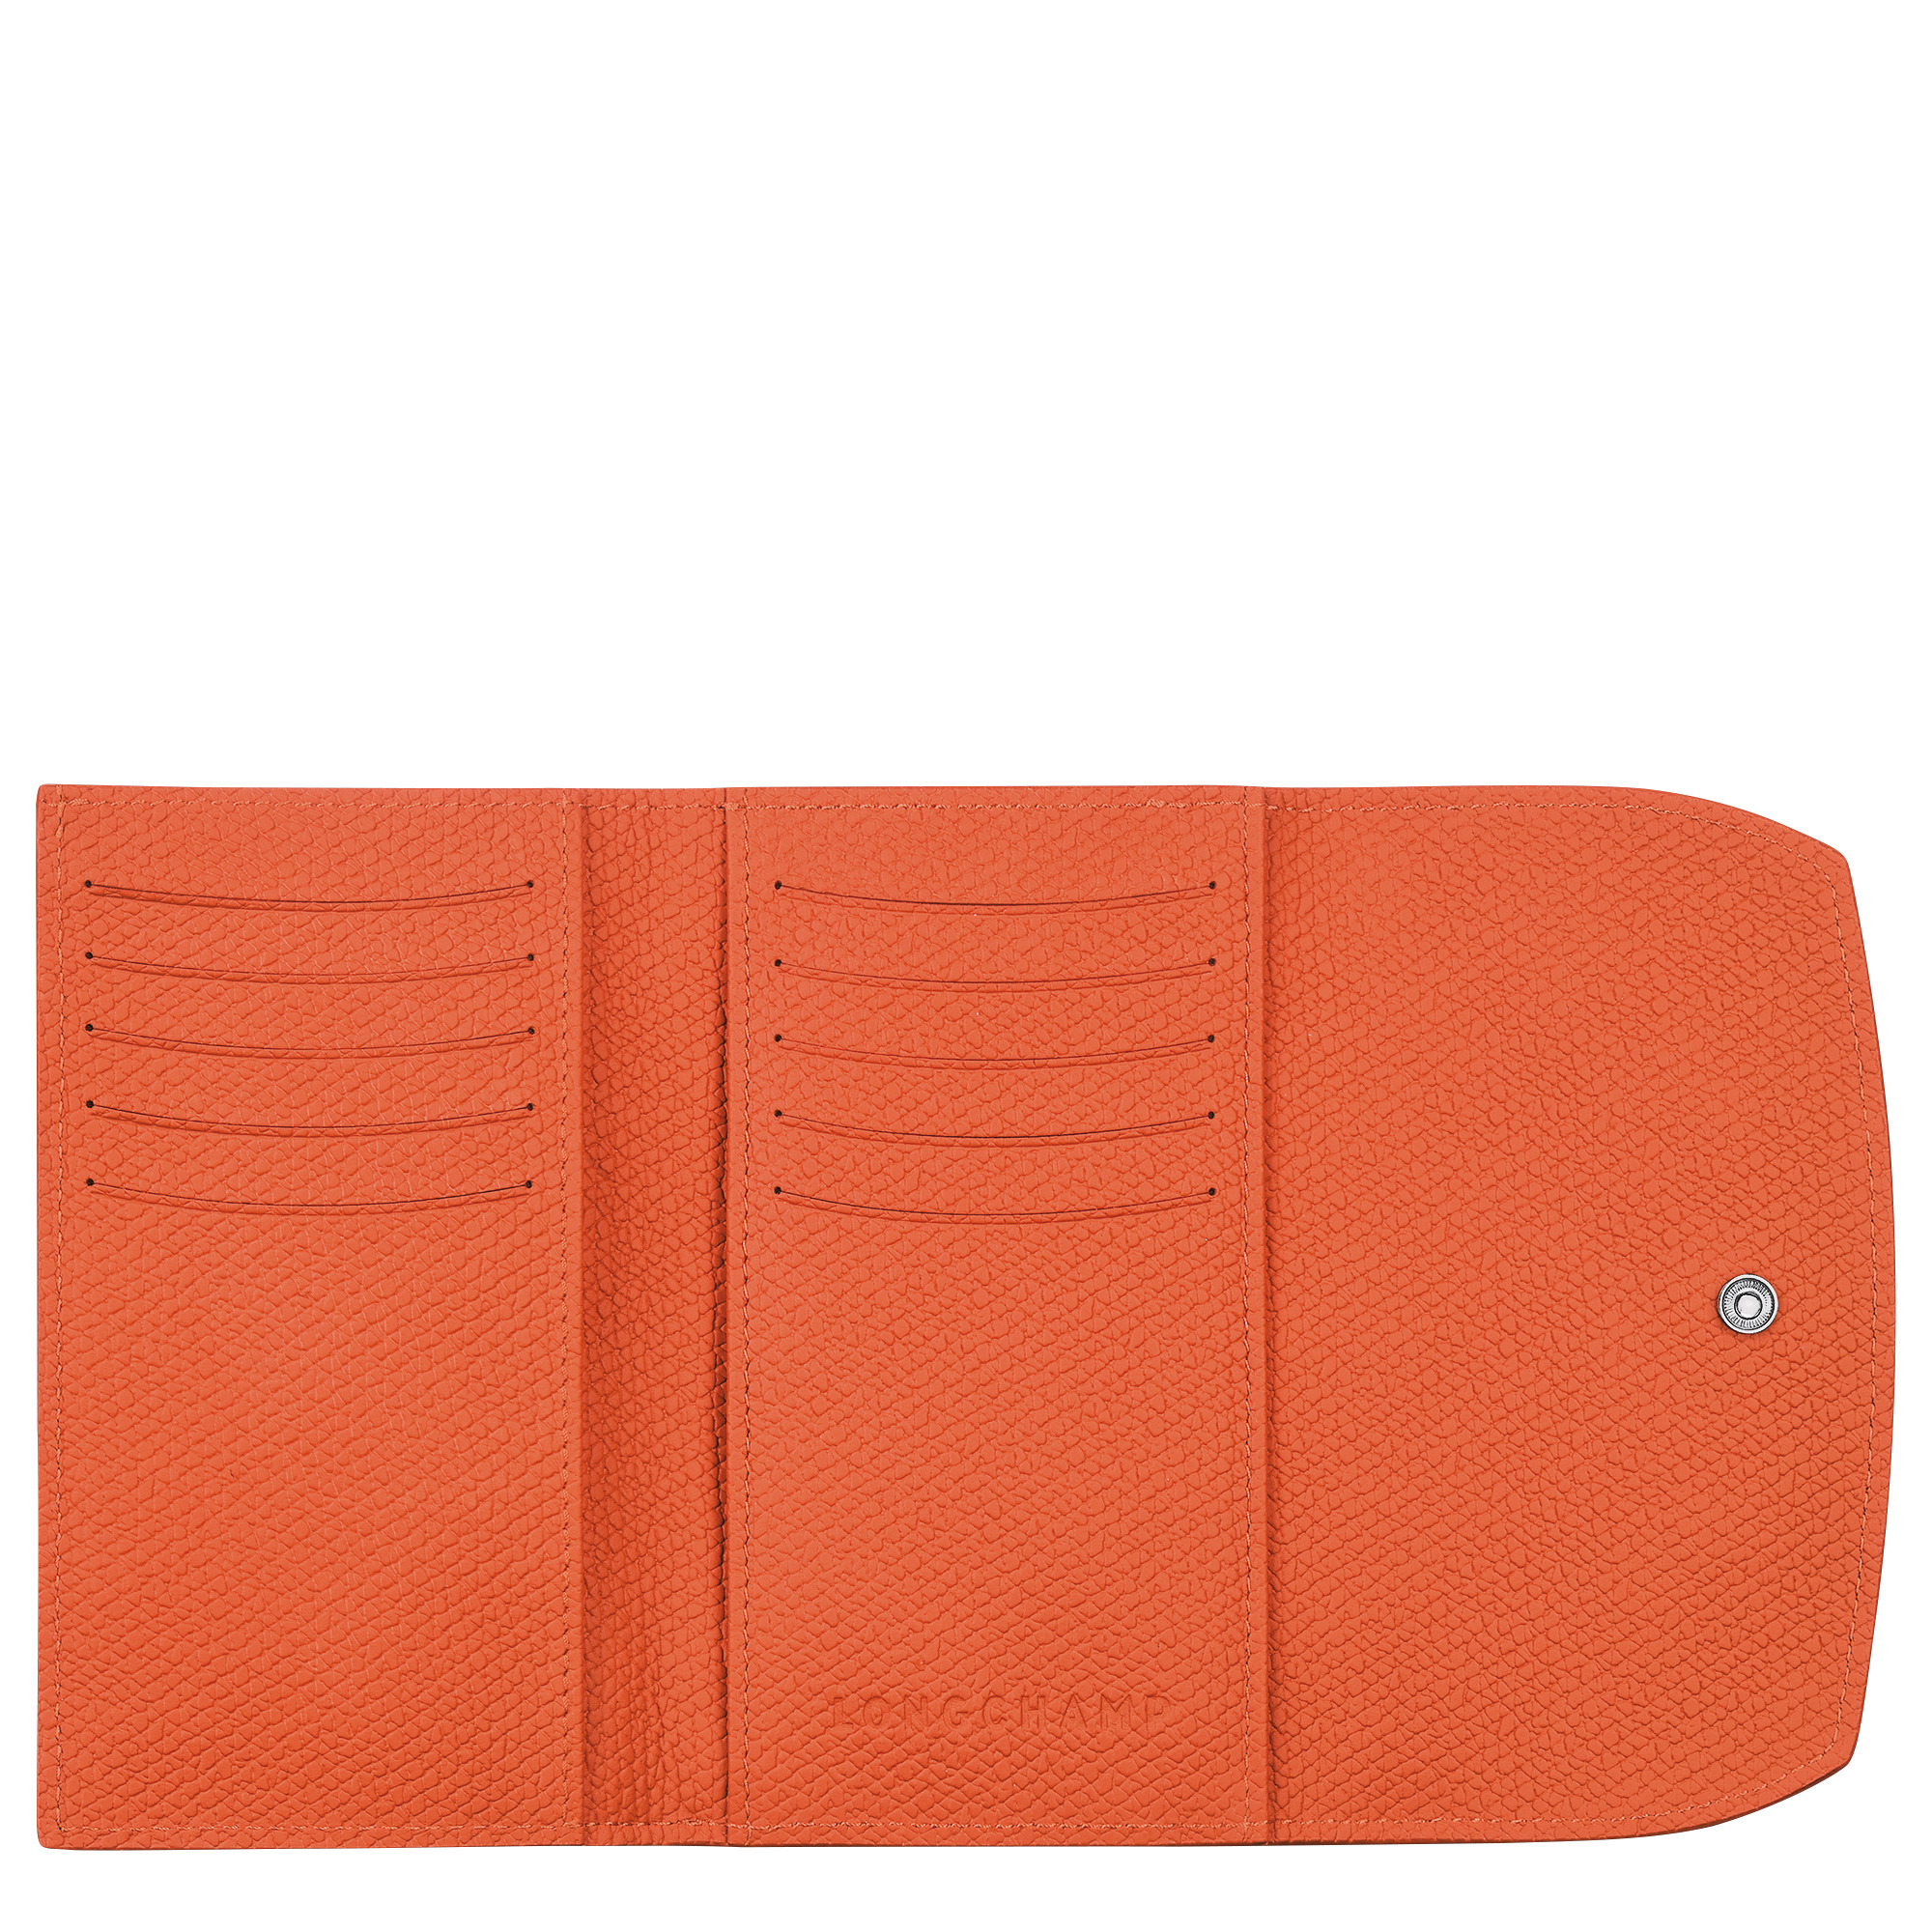 Roseau Wallet Orange - Leather - 2